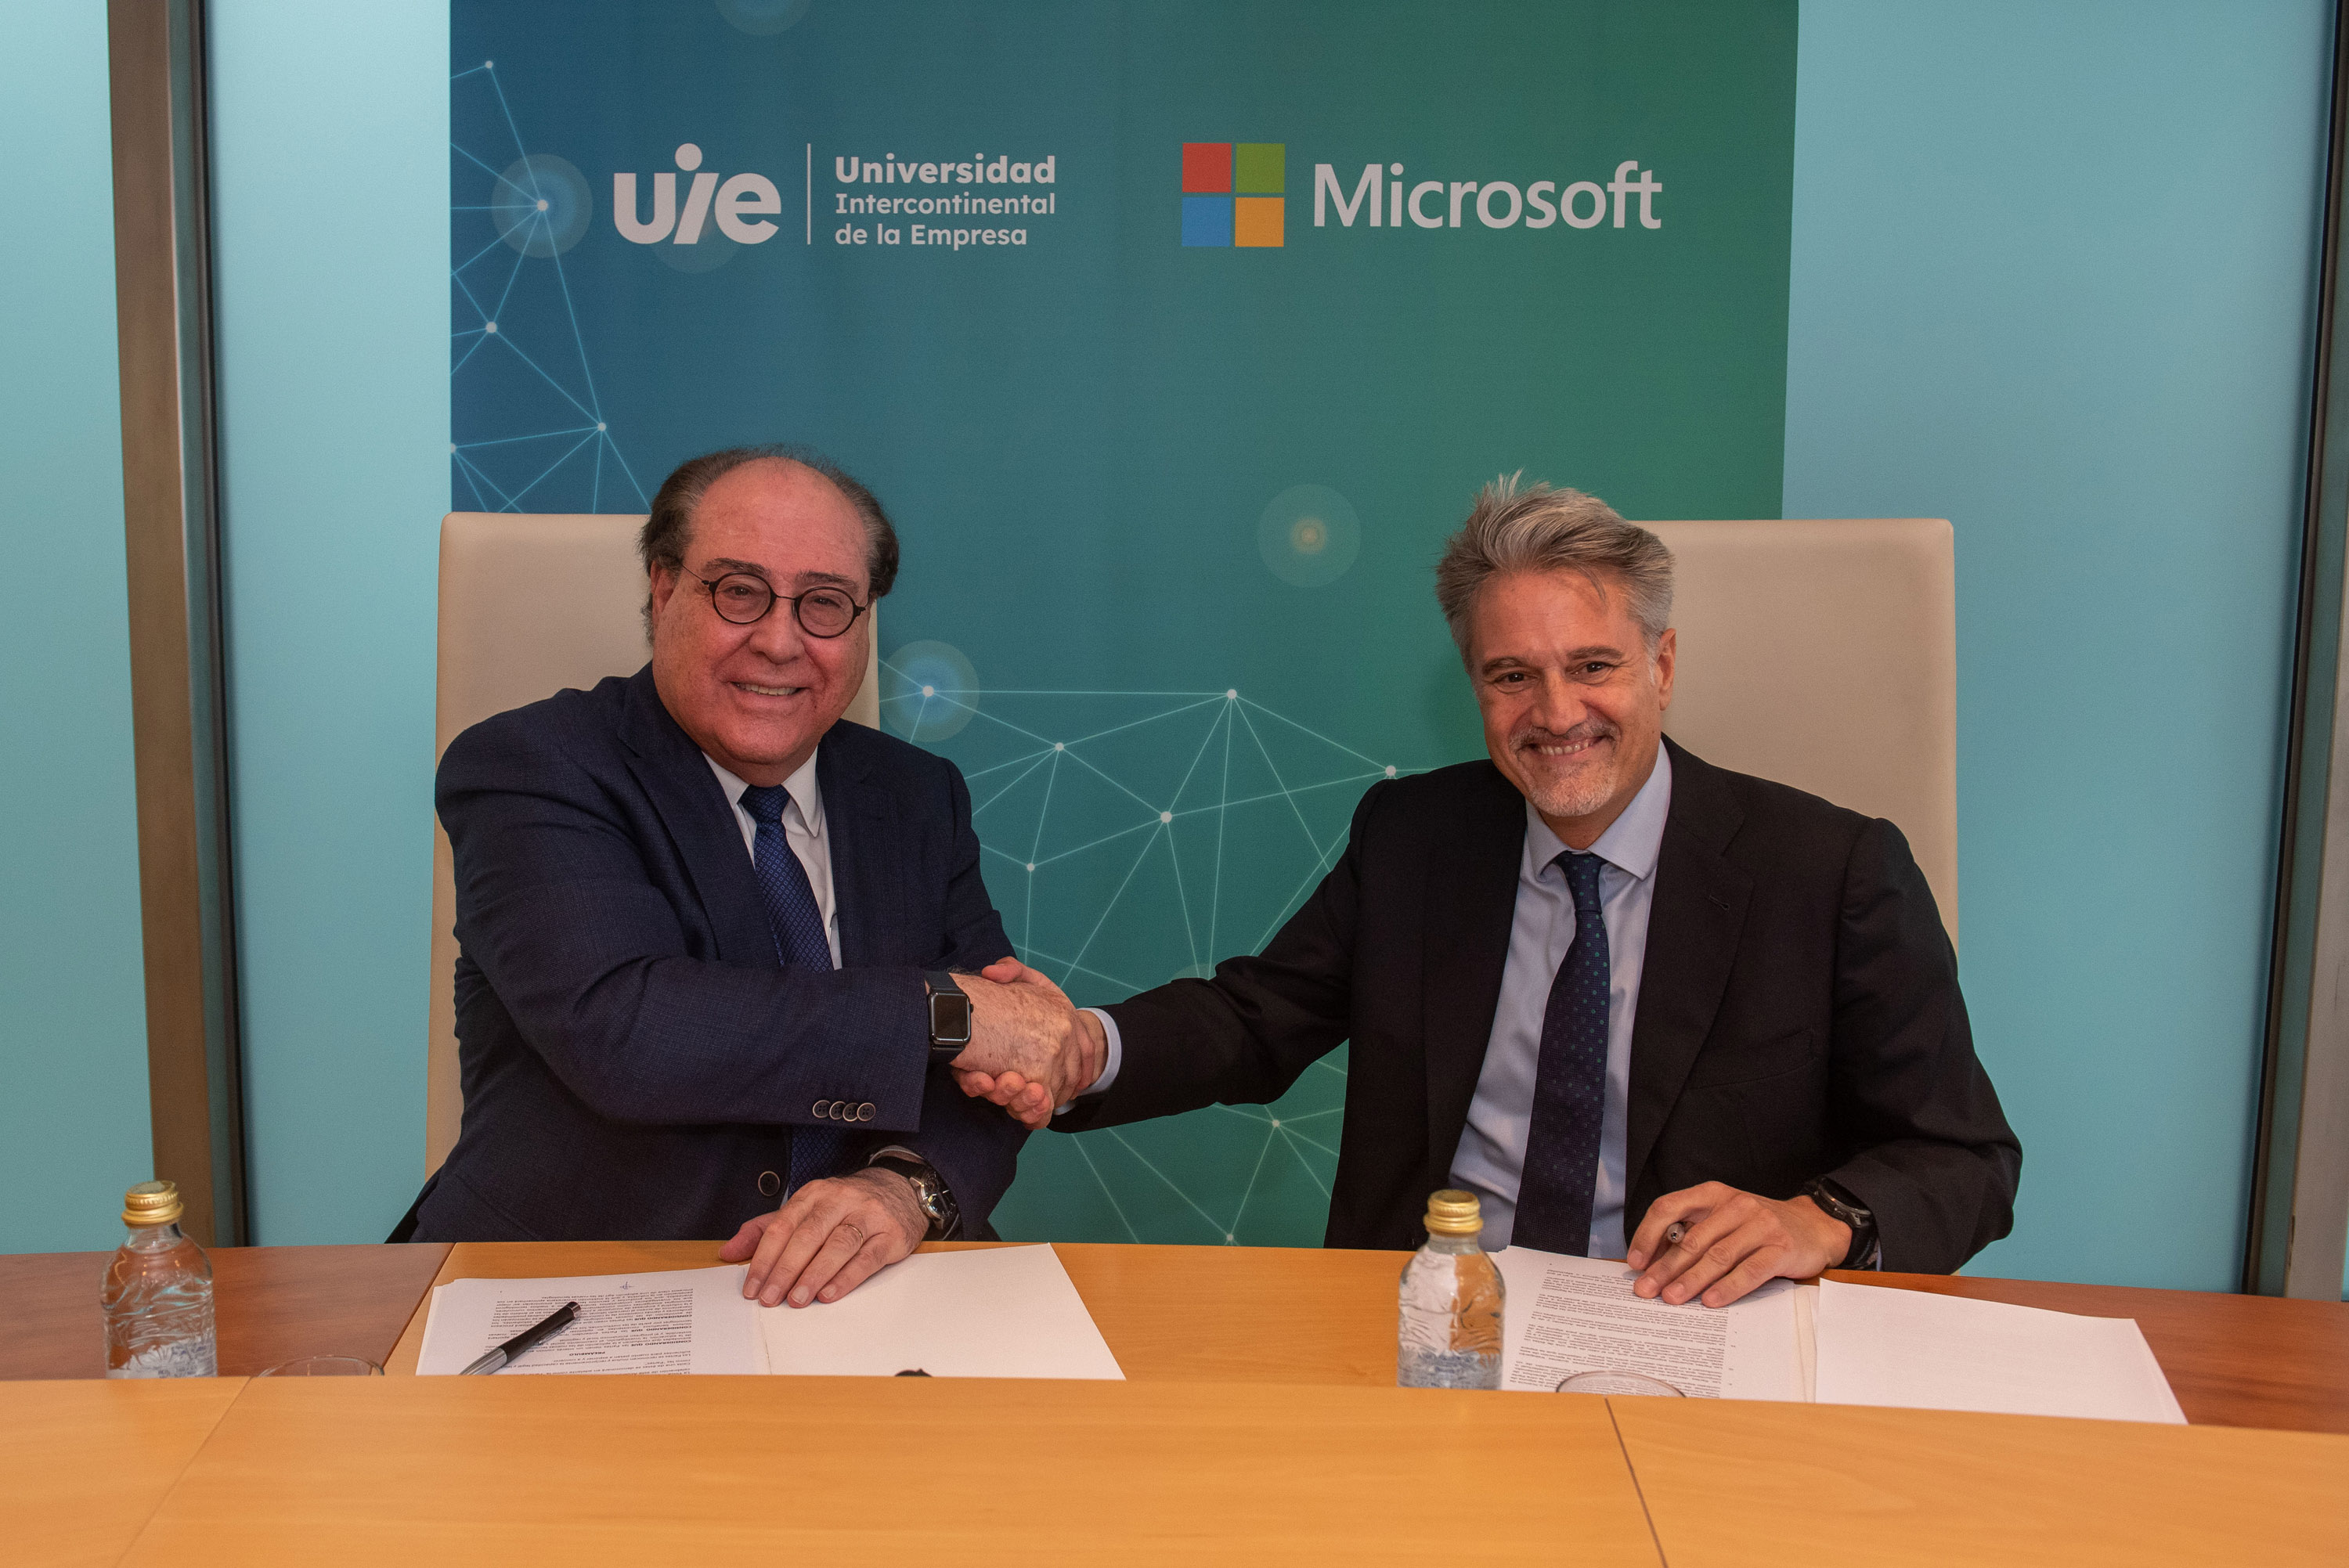 La Universidad Intercontinental de la Empresa (UIE) y Microsoft firman una alianza para capacitar y certificar a sus estudiantes